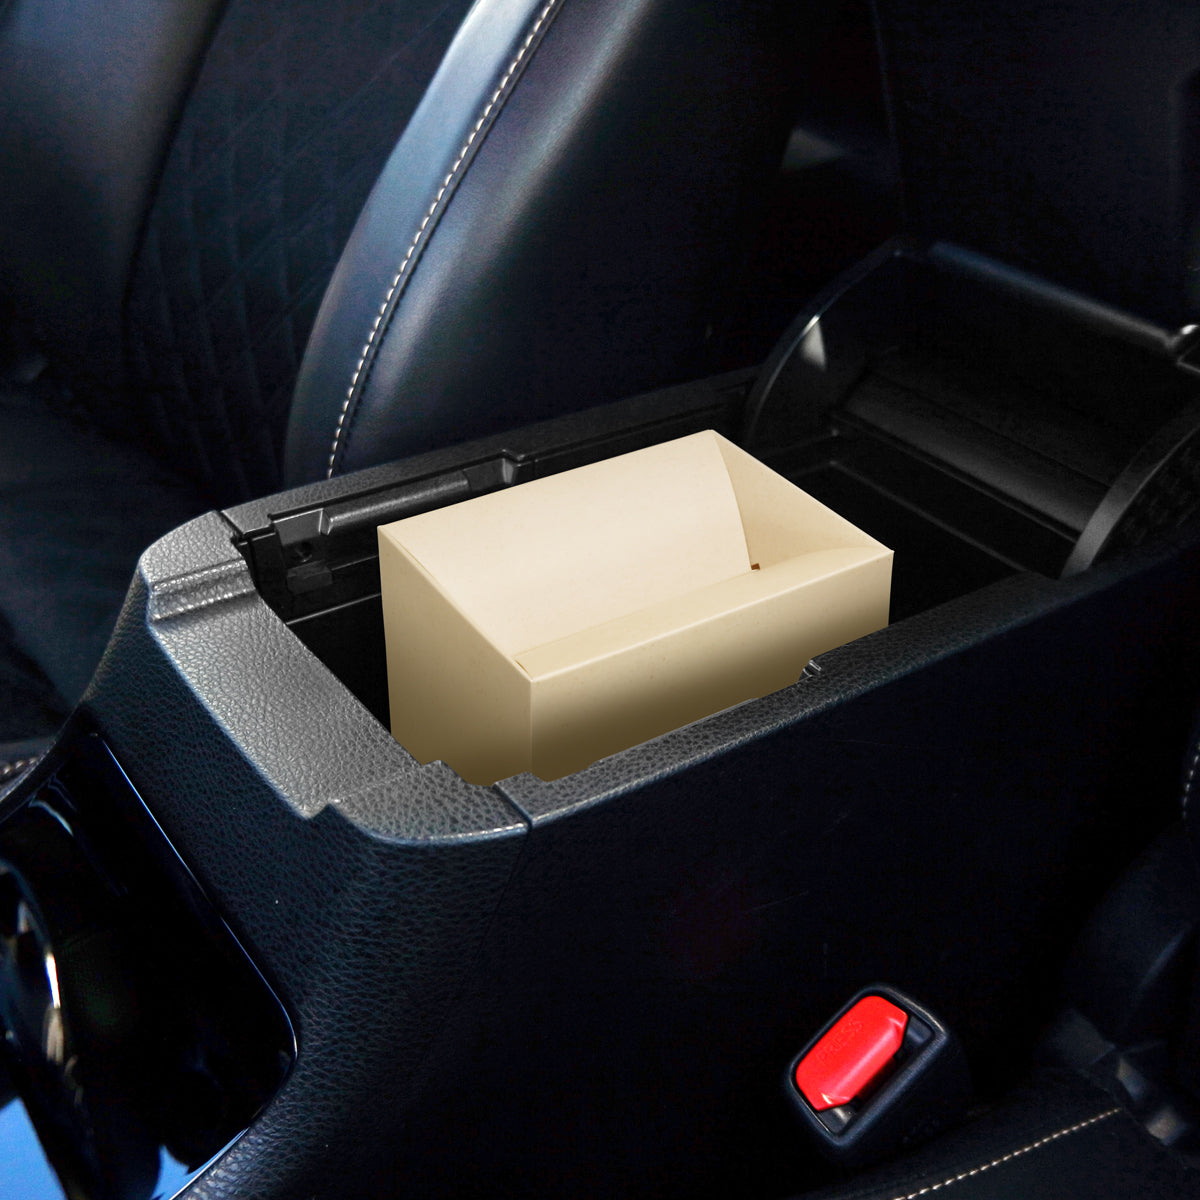 倒れてもゴミが出にくいので、車のフロアコンソールや後部座席などにゴミ箱として置いておくと便利です。